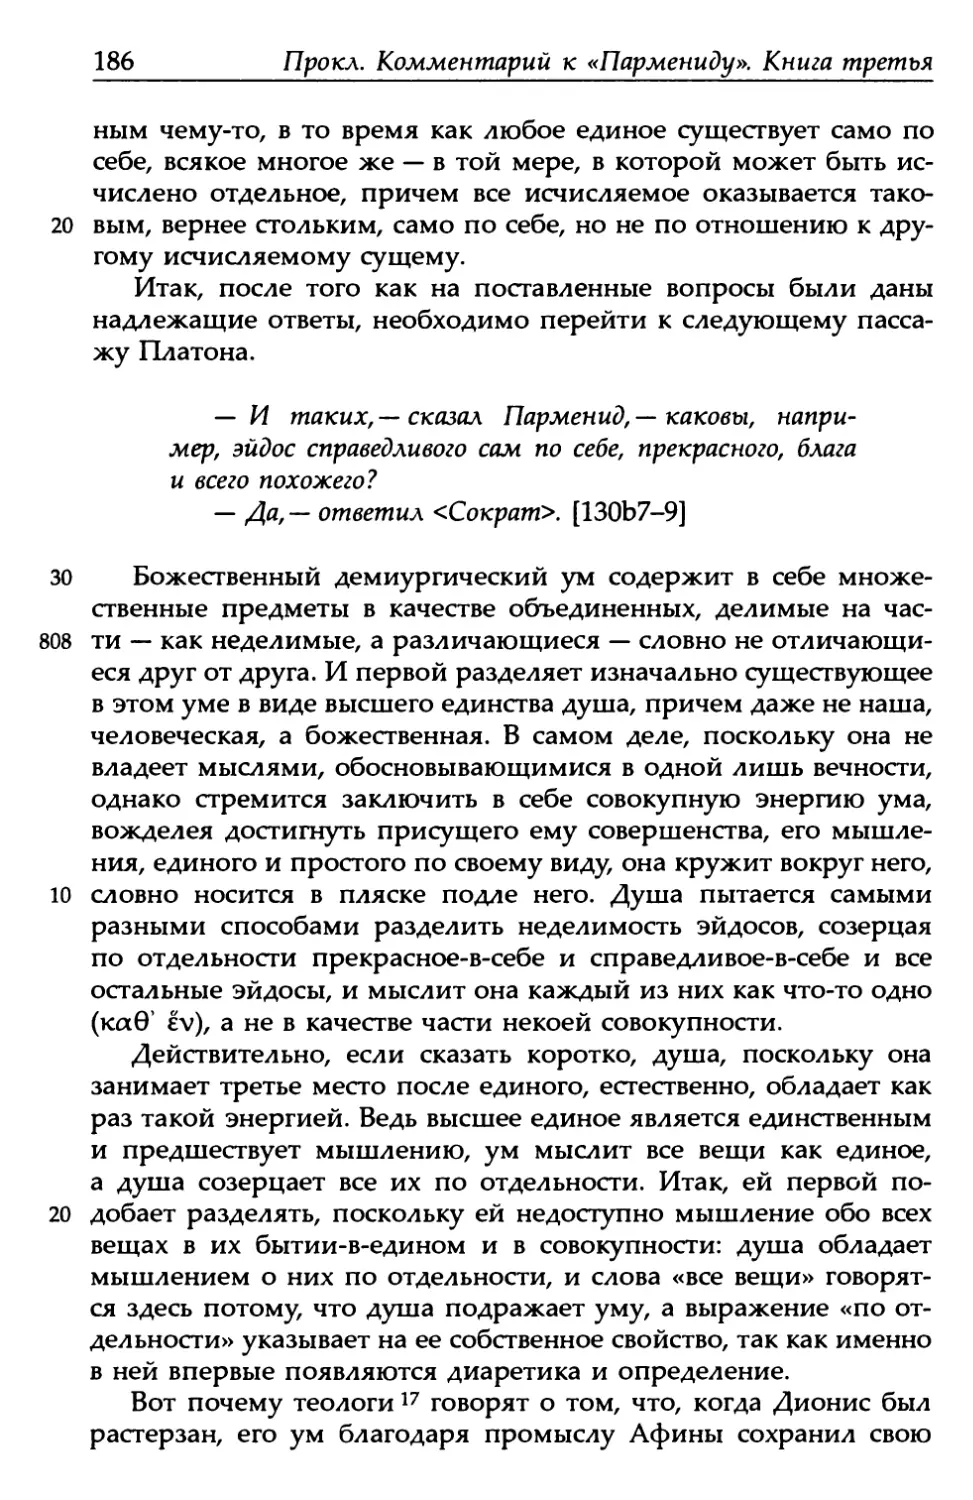 «Парменид», 130b7-9